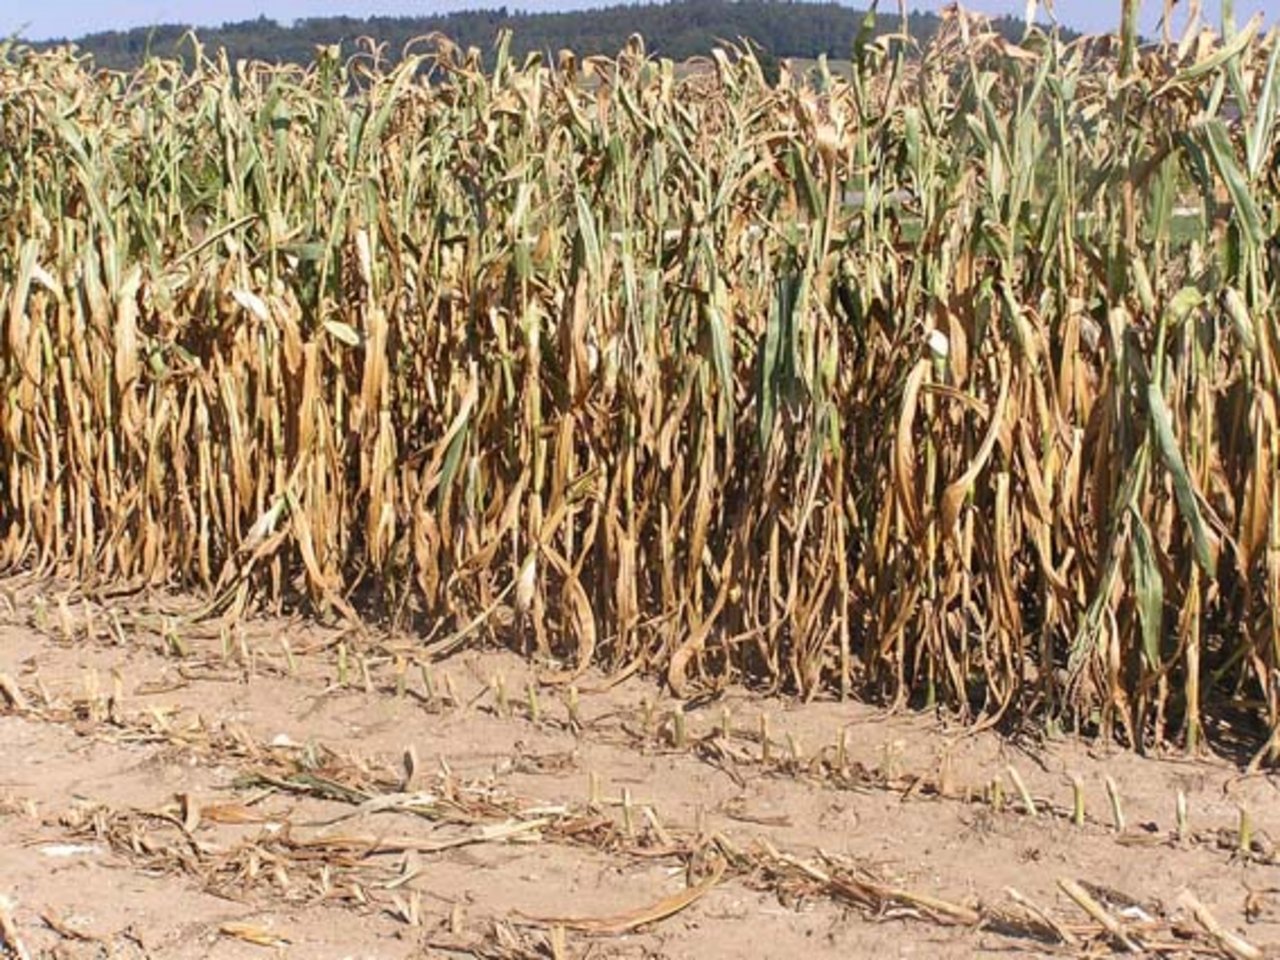 Mais in himmeltraurigem Zustand: Nicht überall sieht es so aus, die Auswirkungen der Trockenheit sind regional sehr unterschiedlich.